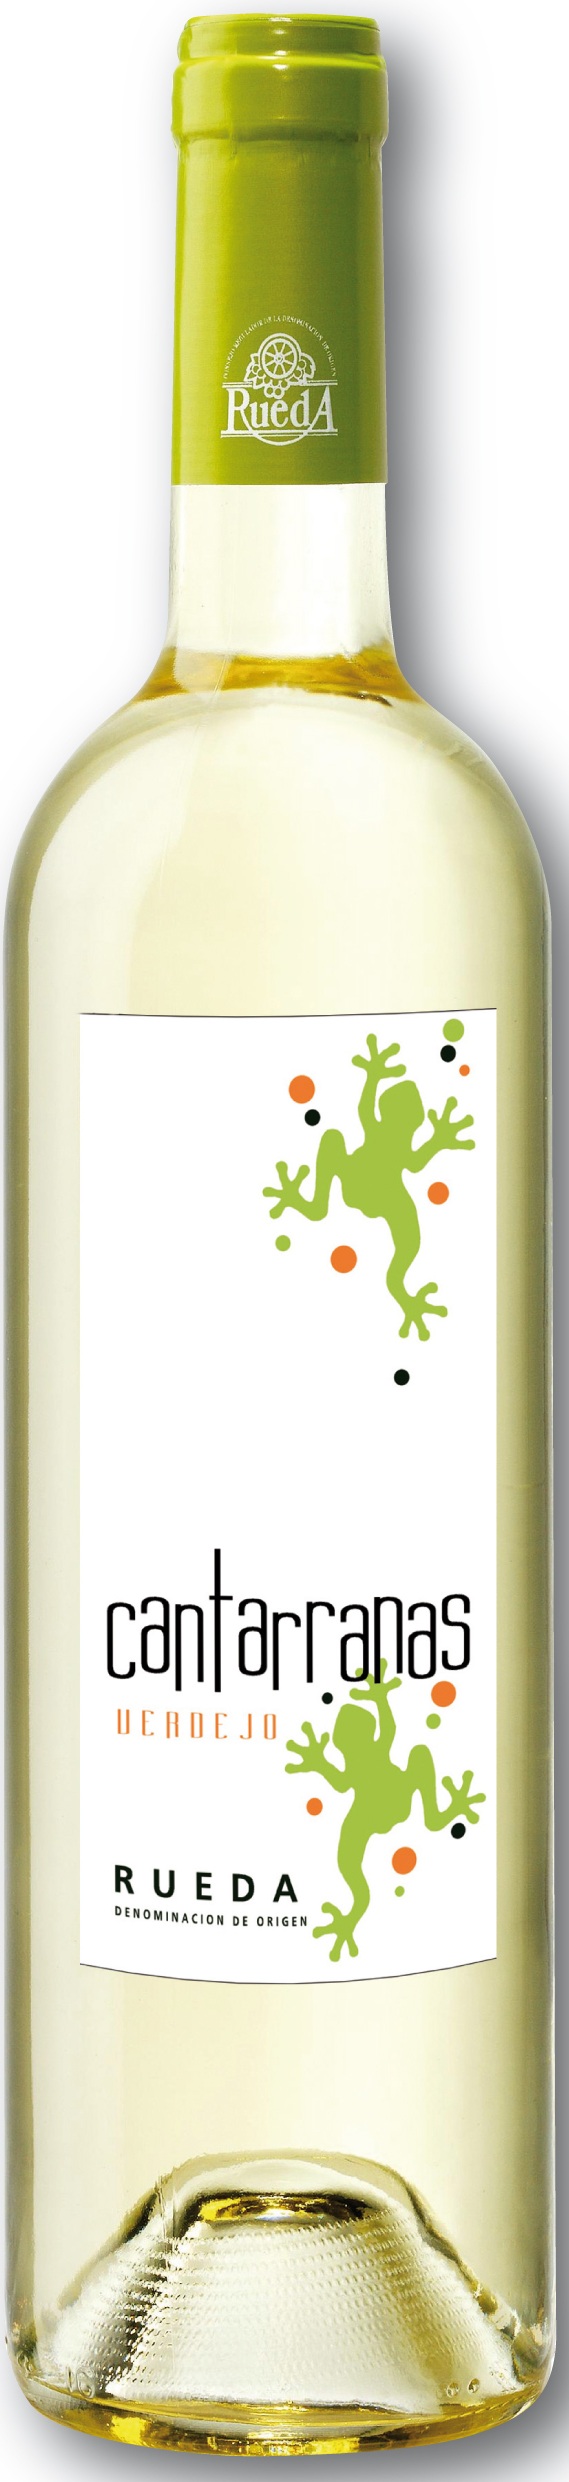 Imagen de la botella de Vino Cantarranas Verdejo